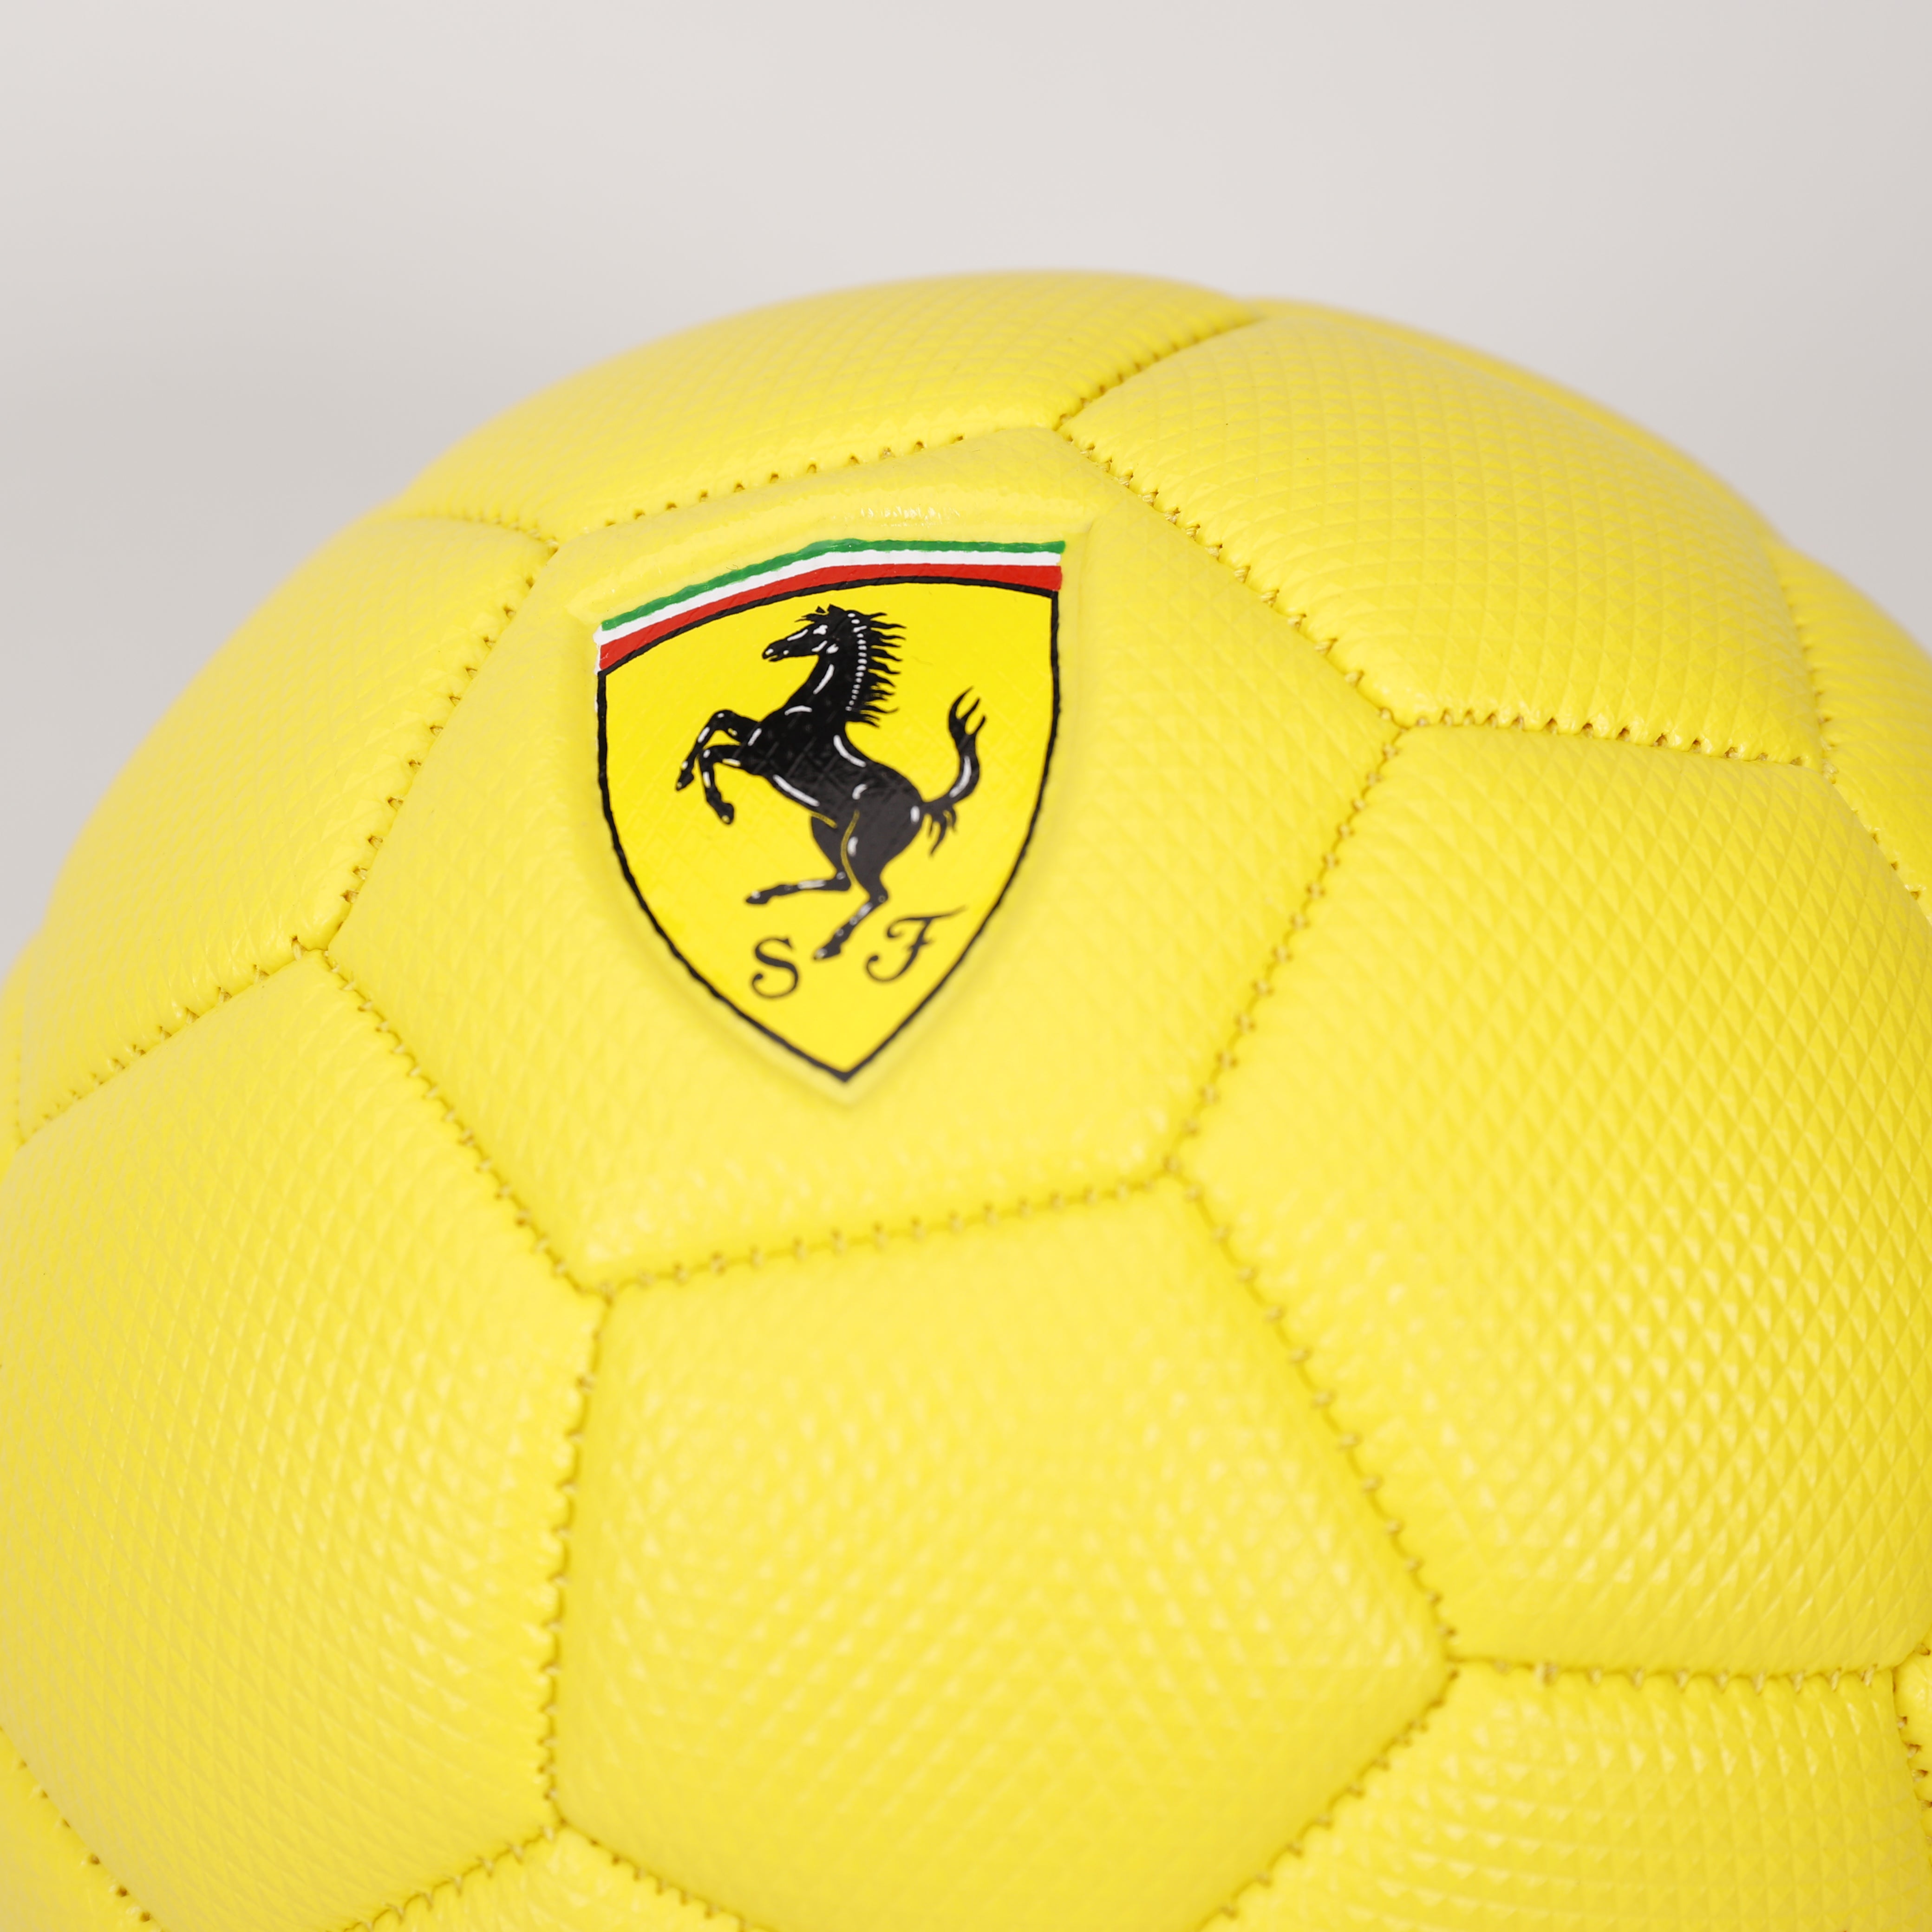 Ferrari Fußball 3 sortierte Größe 2 16,5cm, Soccerball, Sport, Kinder, Spielzeug